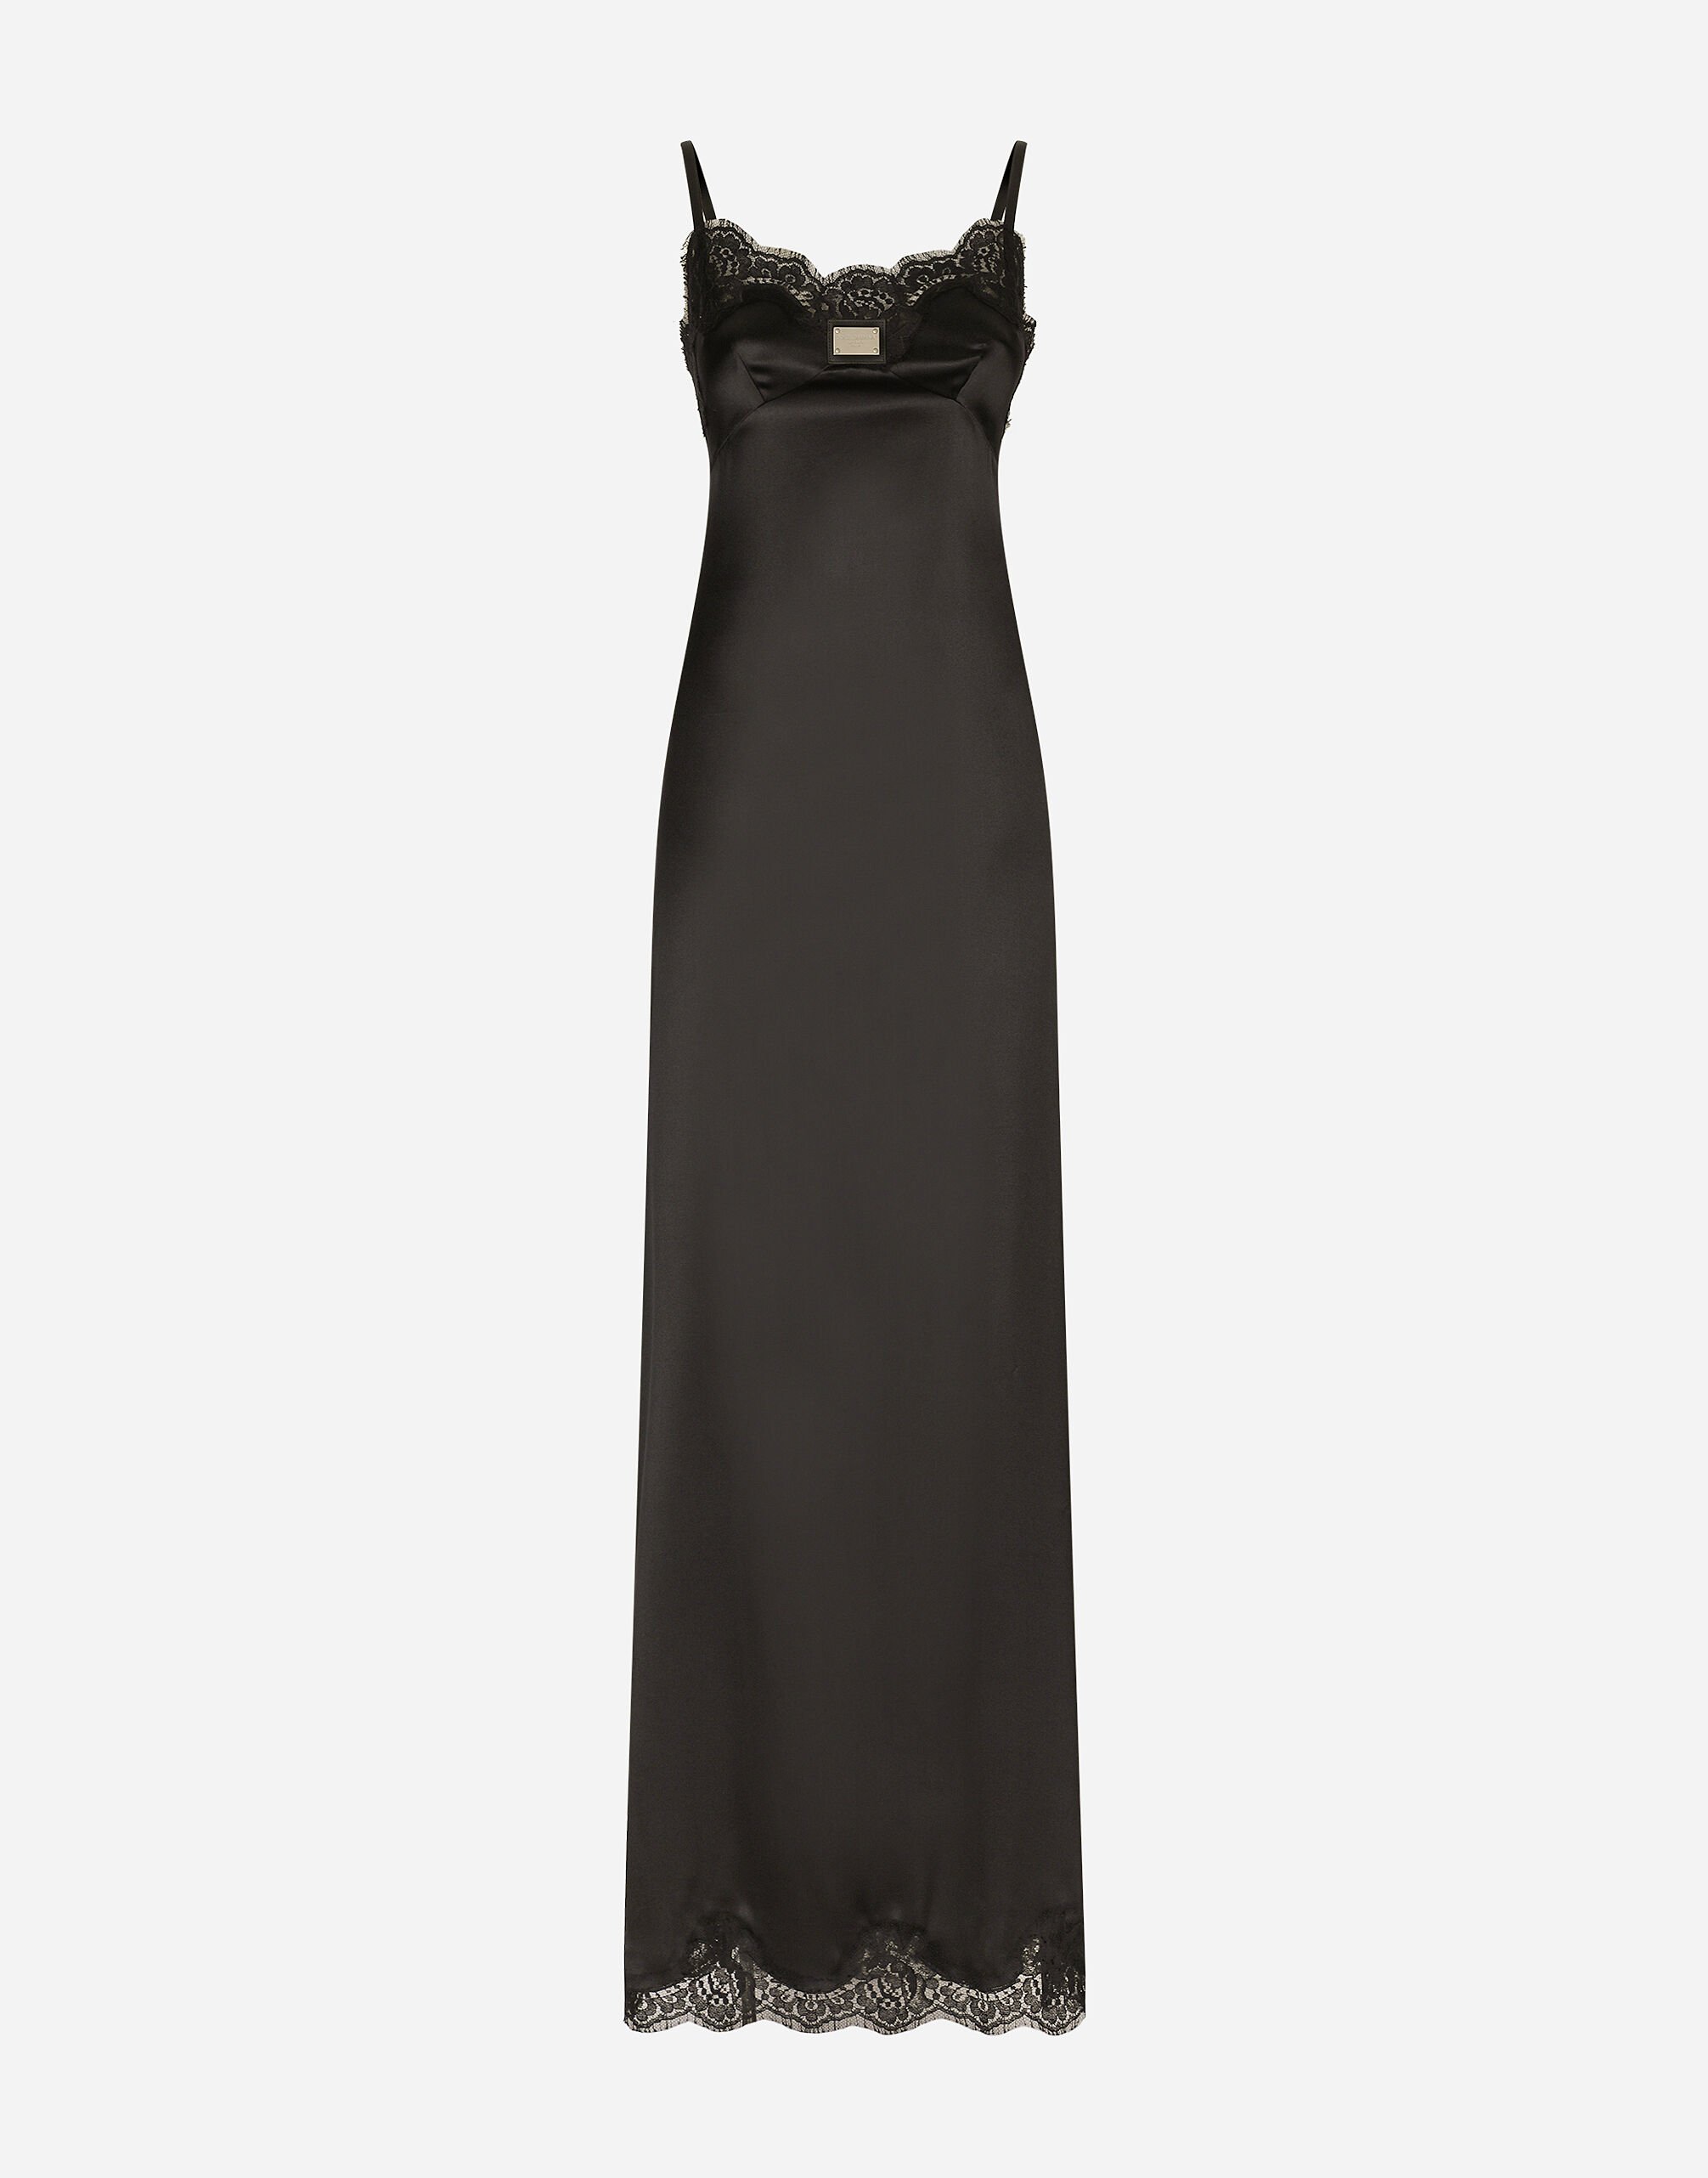 Dolce&Gabbana Long satin slip dress with the Dolce&Gabbana tag Black F778RTFU7DU